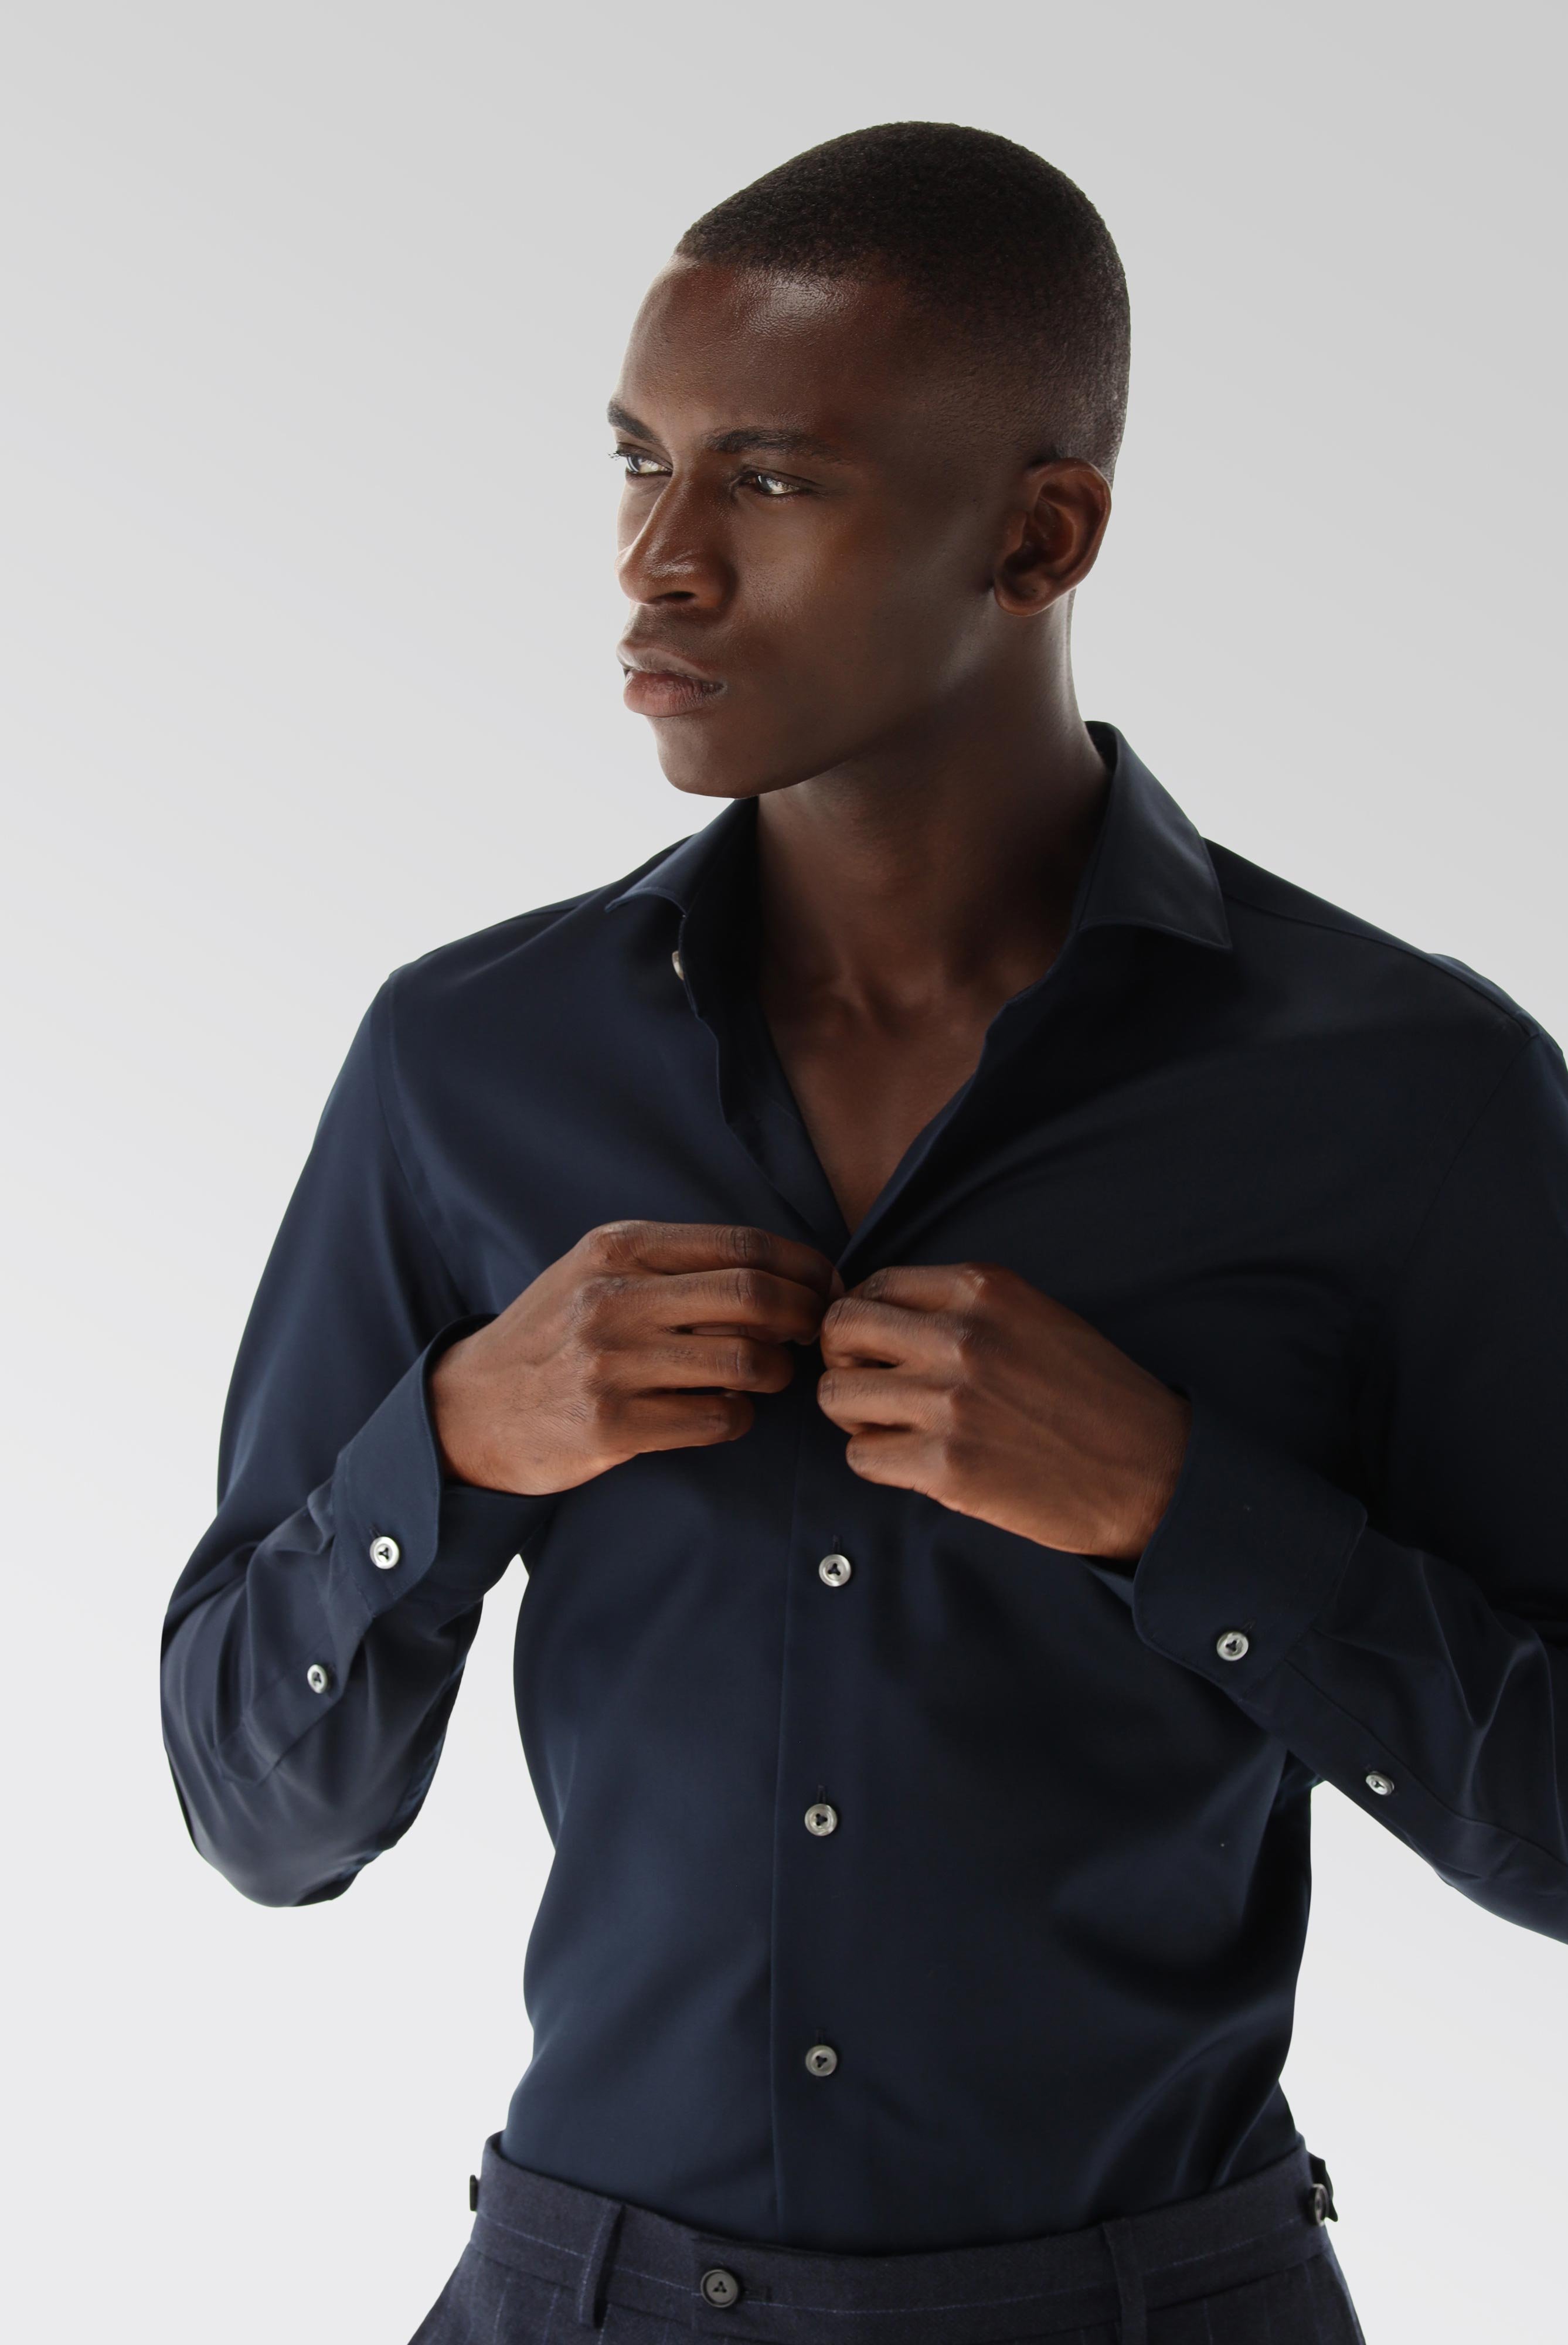 Bügelleichte Hemden+Bügelfreies Hybridshirt mit Jerseyeinsatz Slim Fit+20.2553.0F.132241.785.37